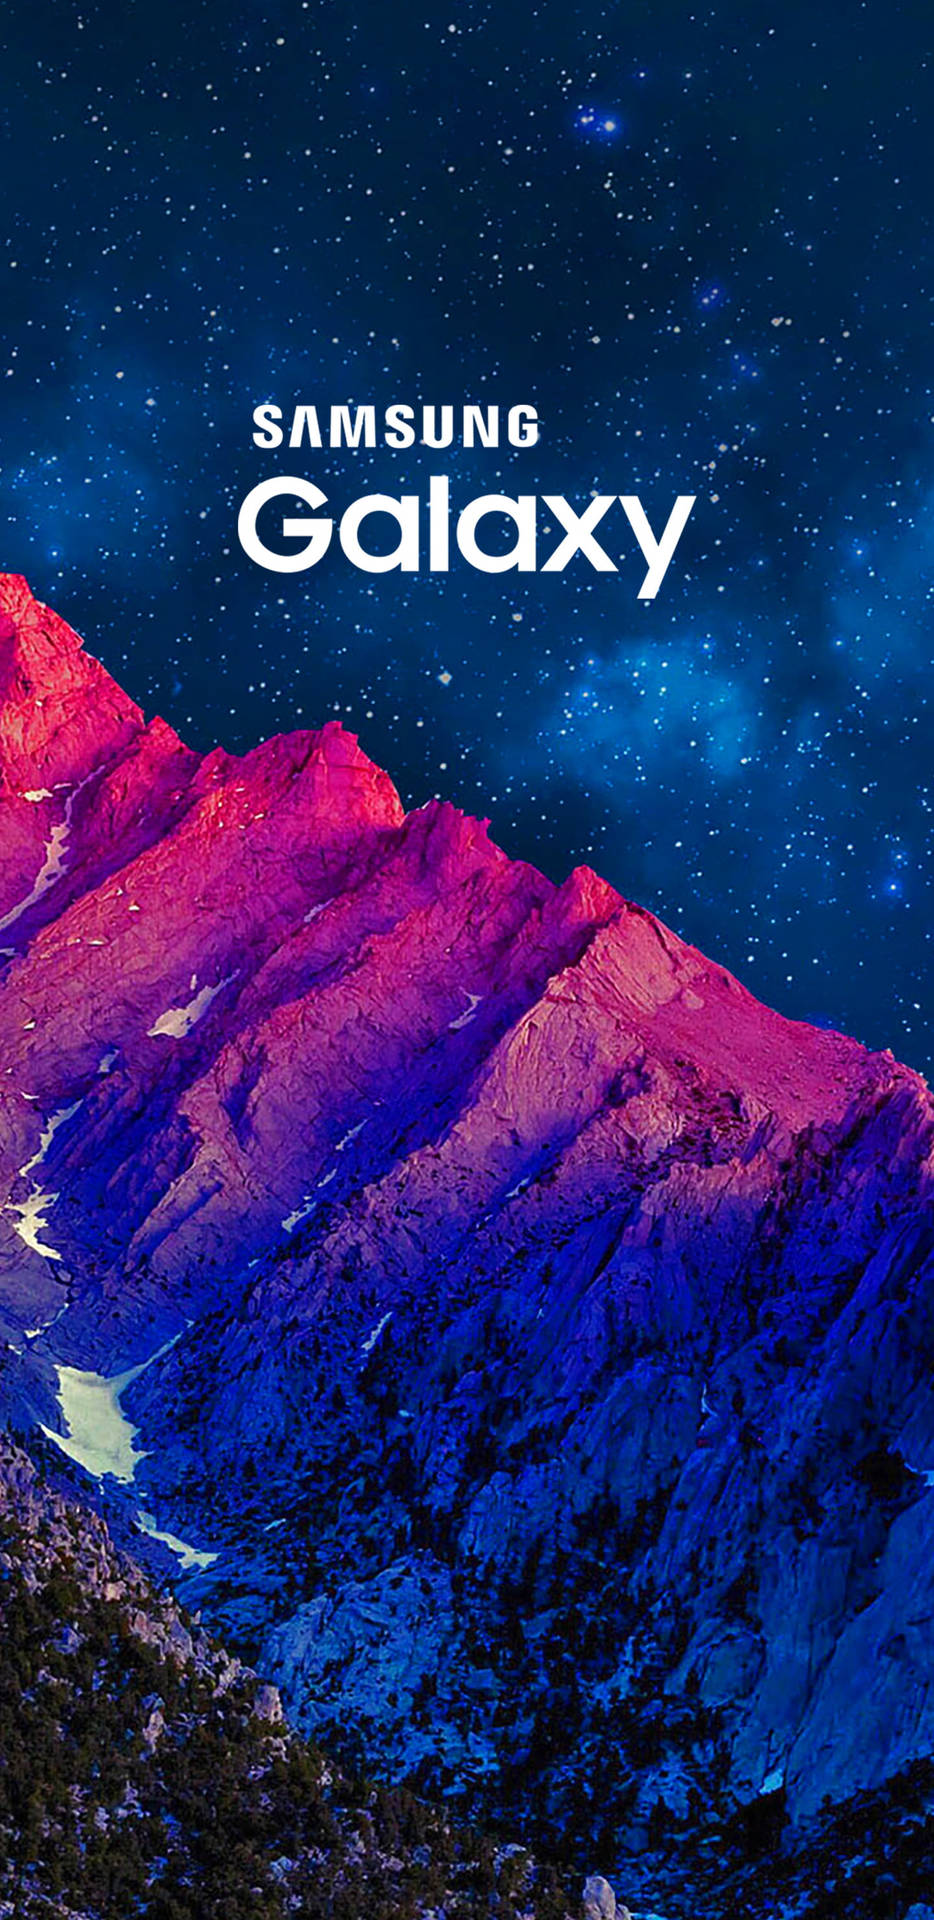 Samsung Galaxy J6 Illuminating The Twilight Mountain Peaks